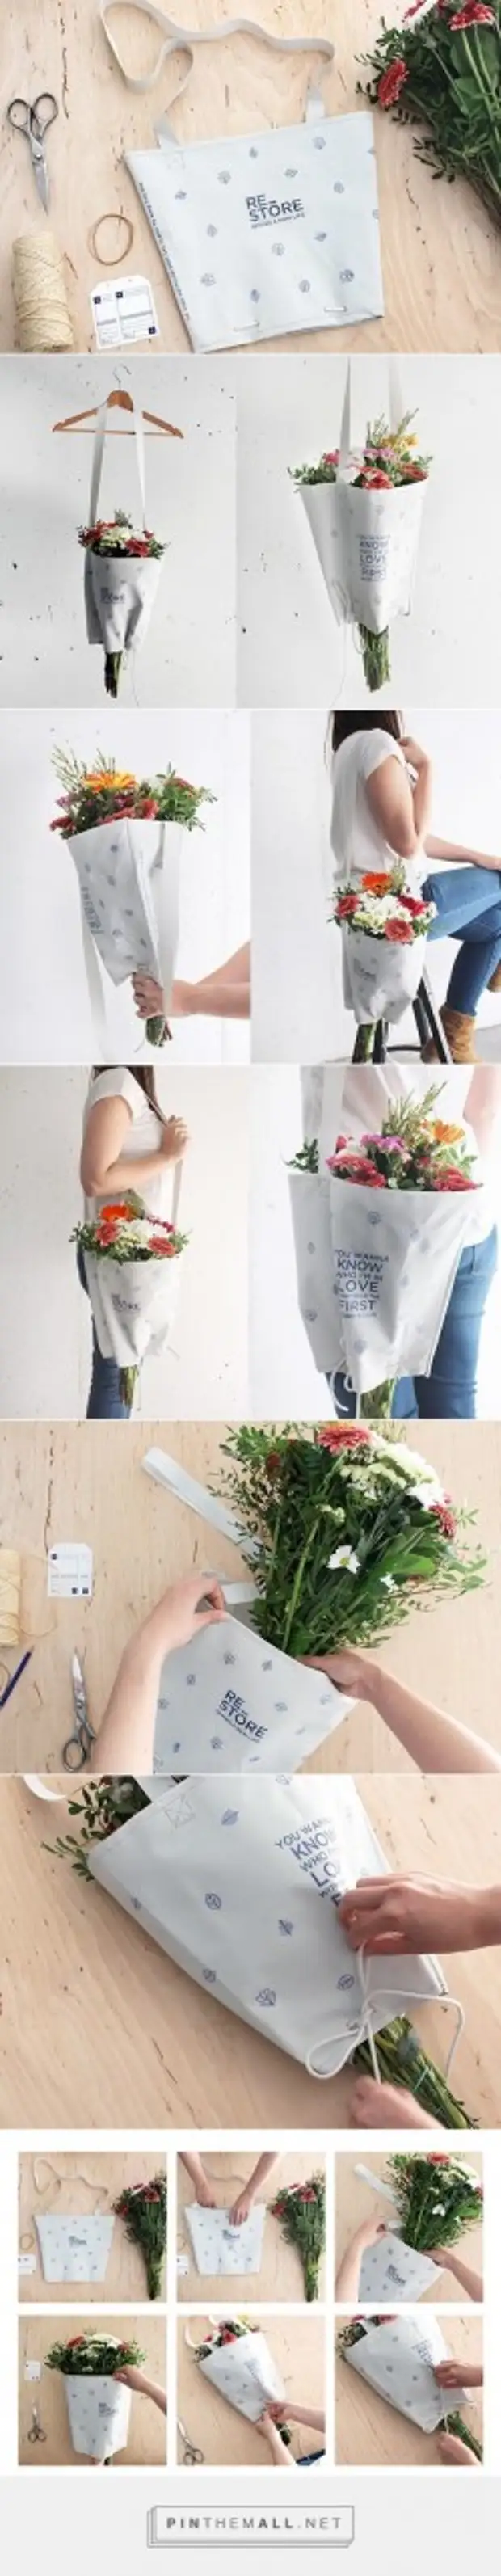 Пошагово креативно упаковать цветы